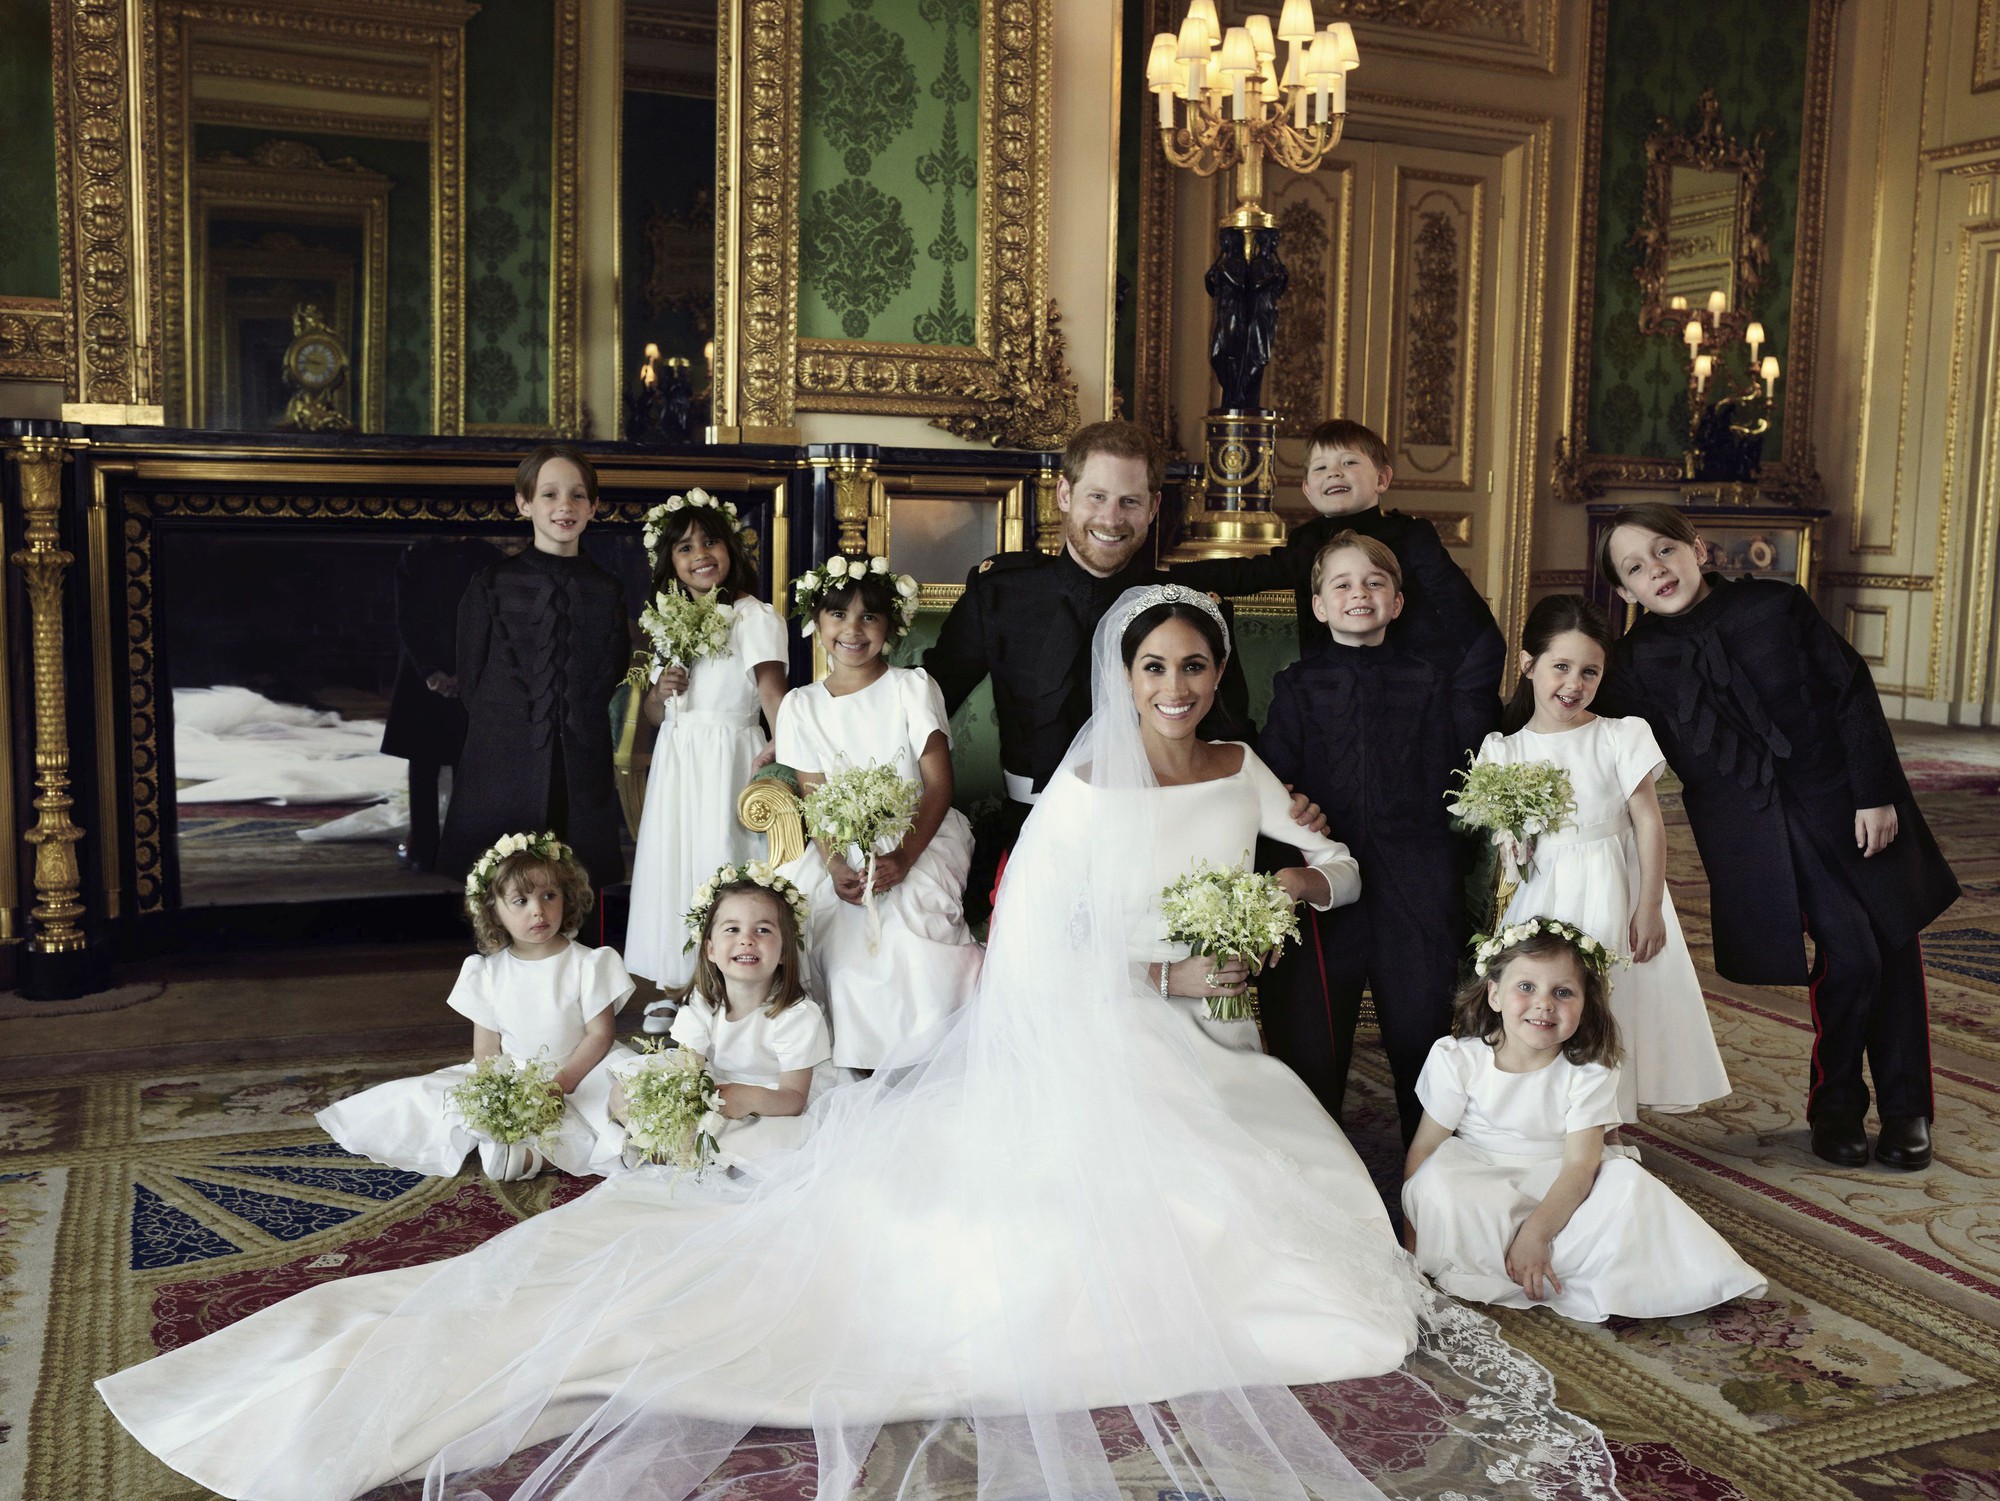 Hoàng gia Anh chính thức công bố ảnh cưới tuyệt đẹp của Hoàng tử Harry và Công nương Meghan - Ảnh 2.